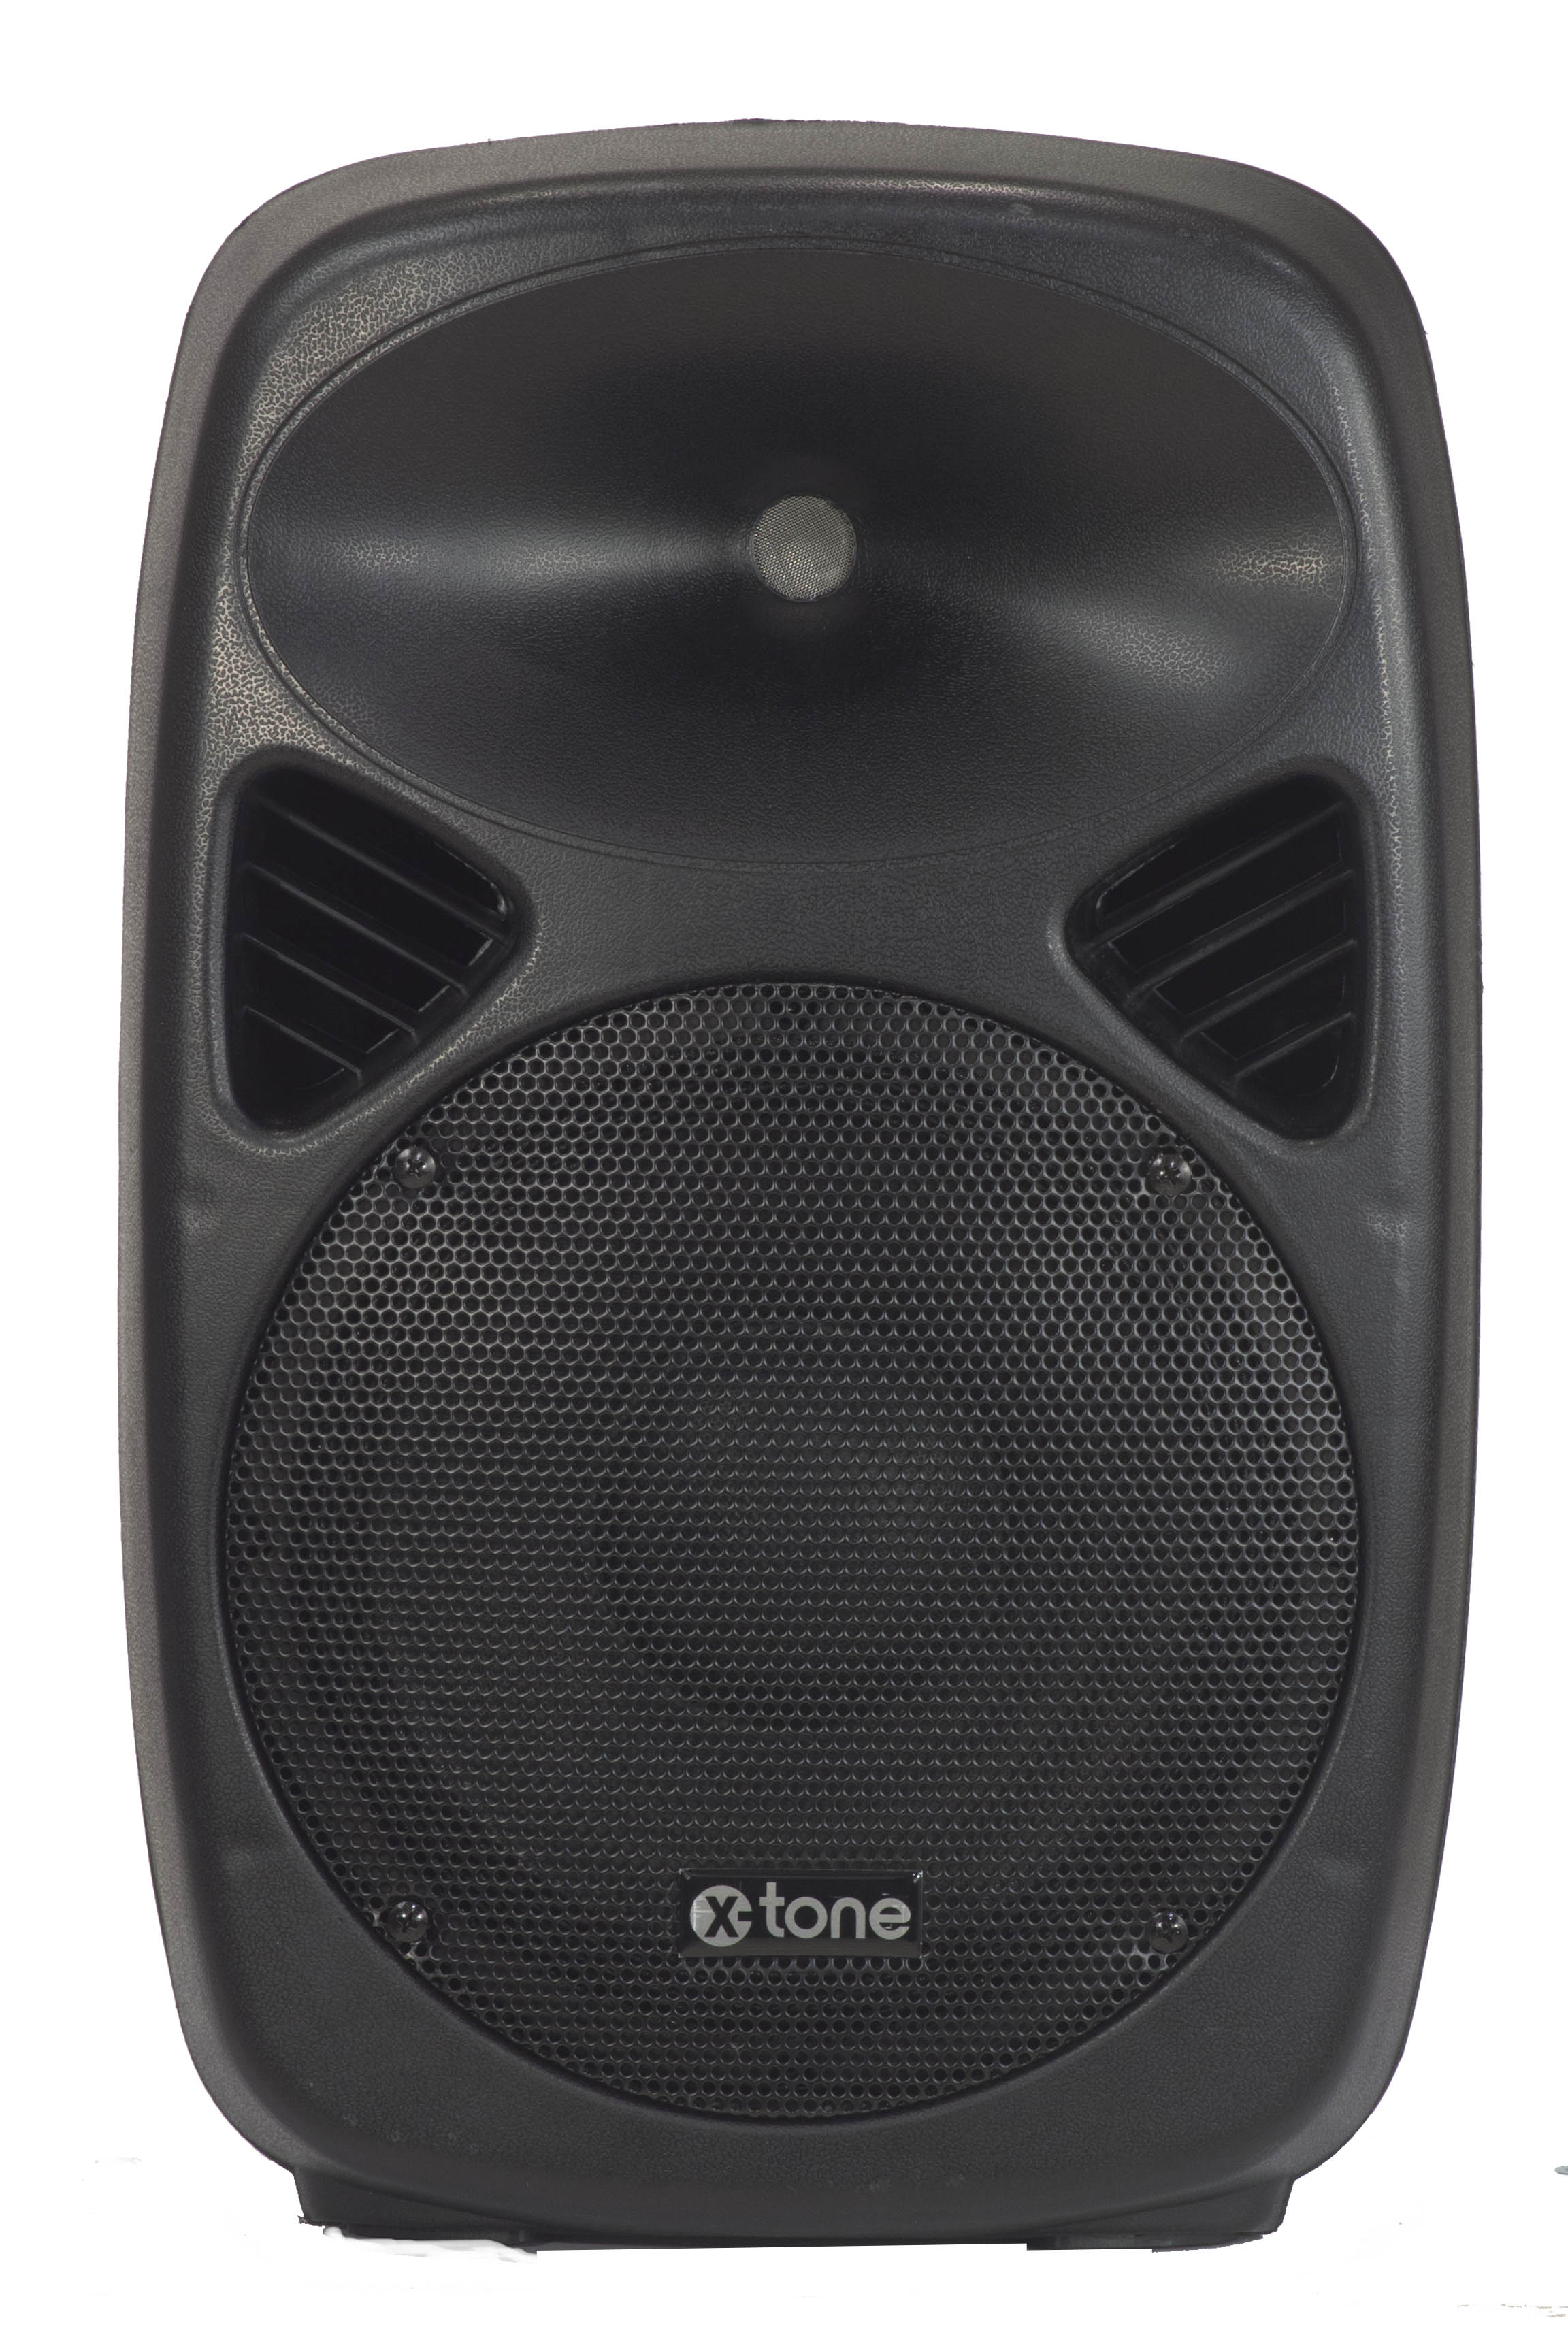 X-tone Sma-8 - Active full-range speaker - Variation 2